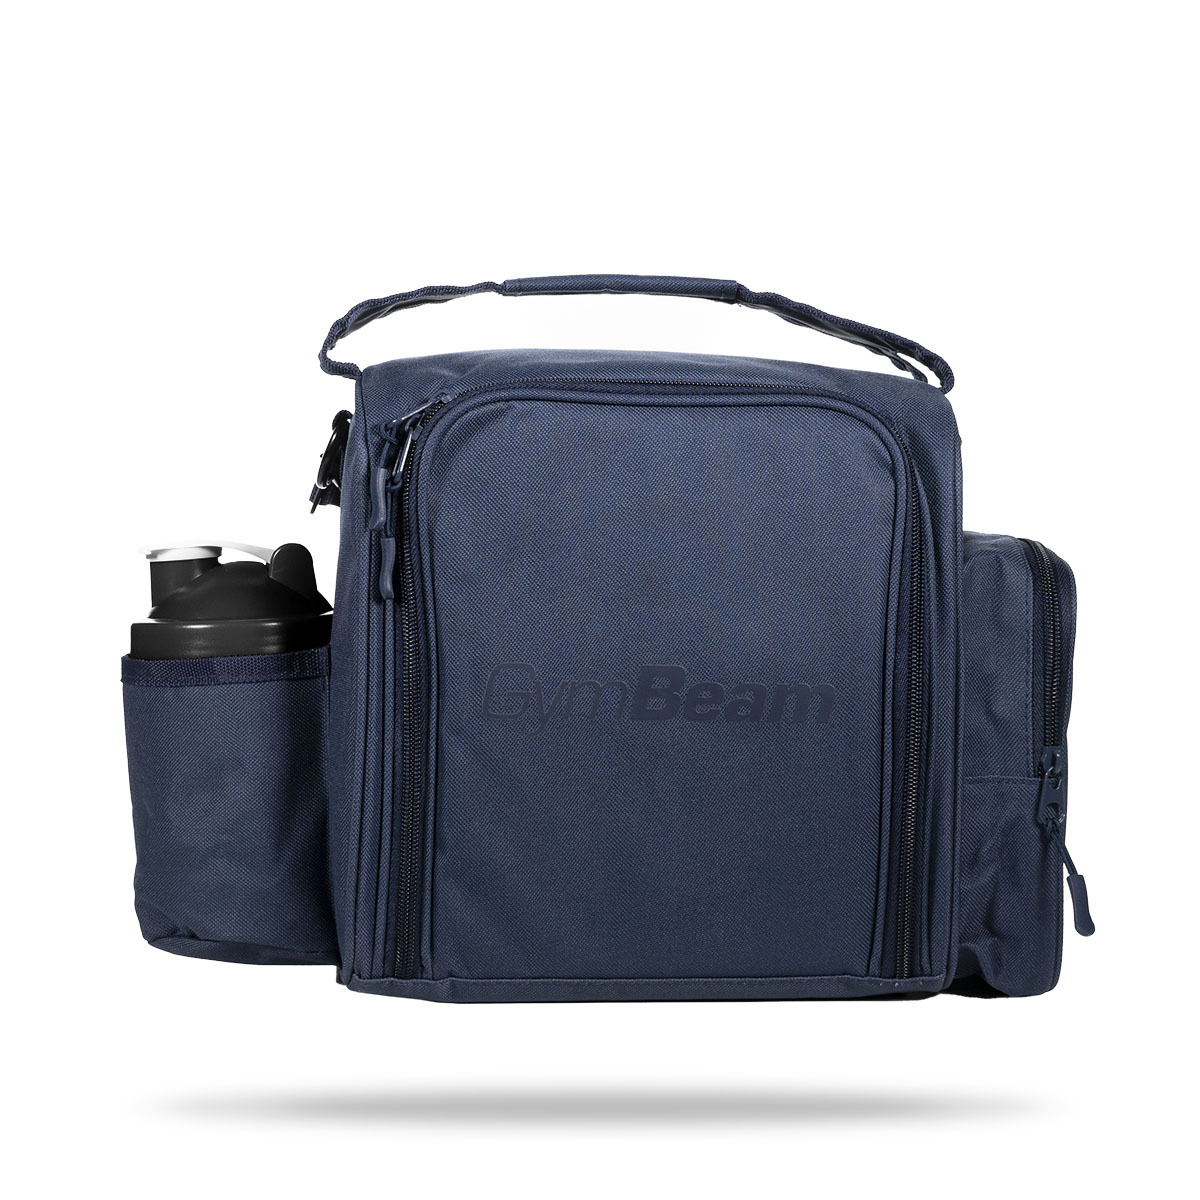 https://gymbeam.com/media/catalog/product/m/e/meal-prep-bag-fit-navy-blue-gymbeam_2_.jpg